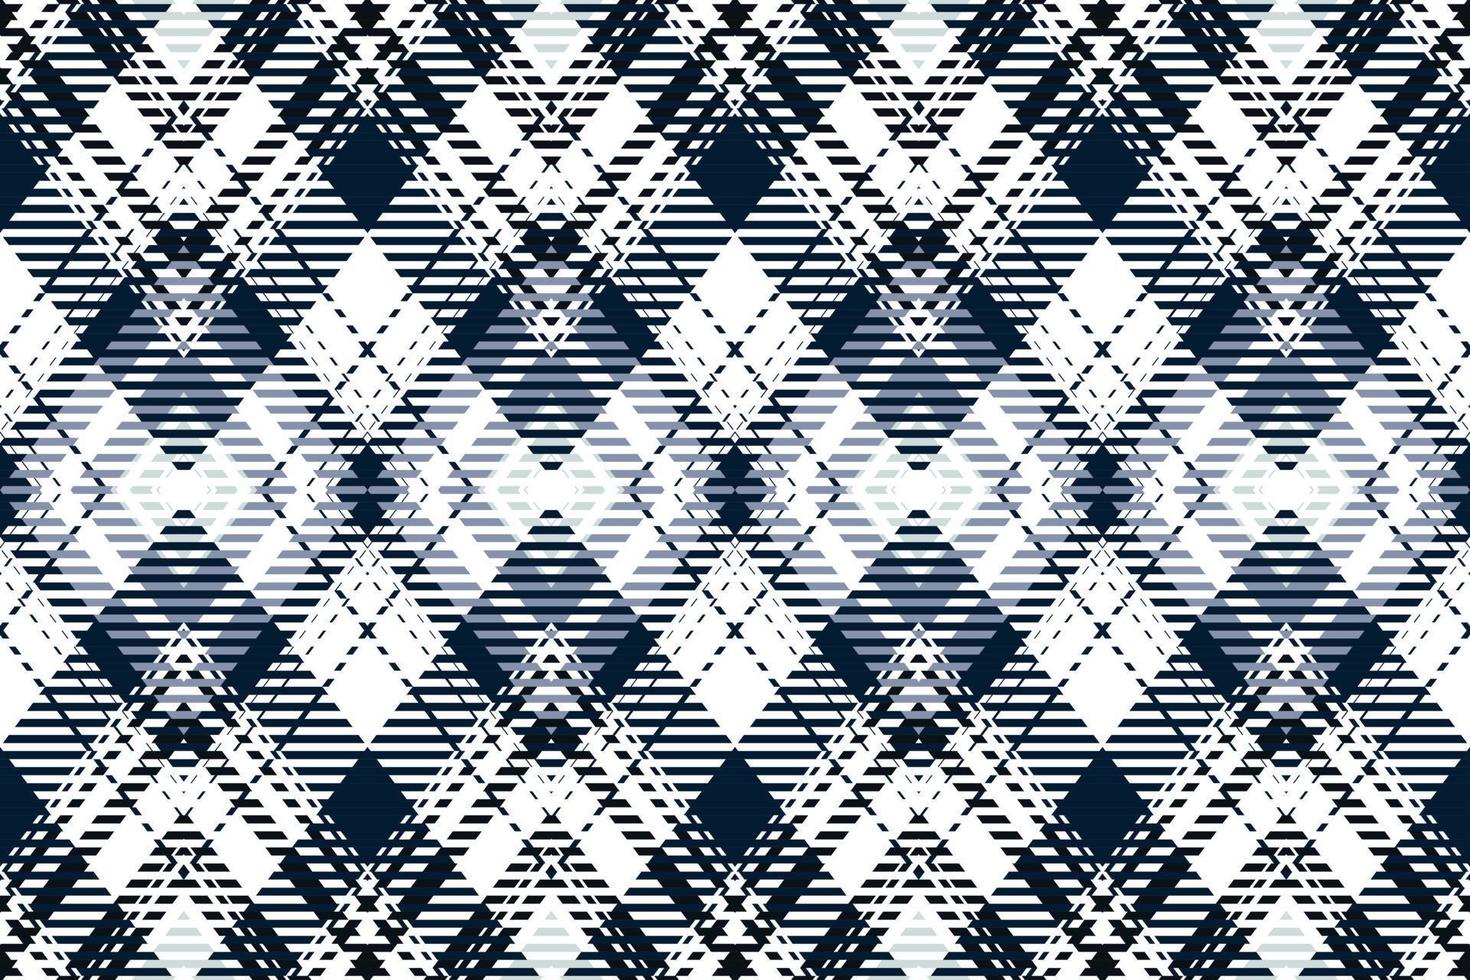 Büffel Plaid Muster Stoff Design Hintergrund ist ein gemustert Stoff bestehend aus von criss gekreuzt, horizontal und Vertikale Bands im mehrere Farben. Tartans sind angesehen wie ein kulturell Symbol von Schottland. vektor